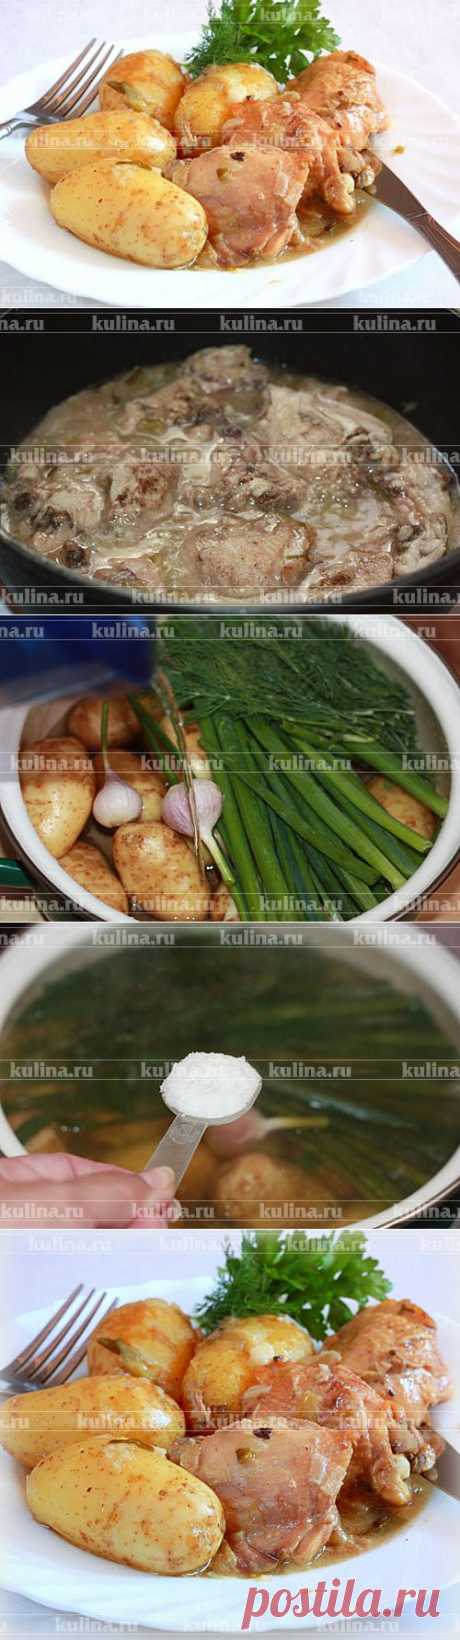 Курица в собственном соку с молодым картофелем – рецепт приготовления с фото от Kulina.Ru